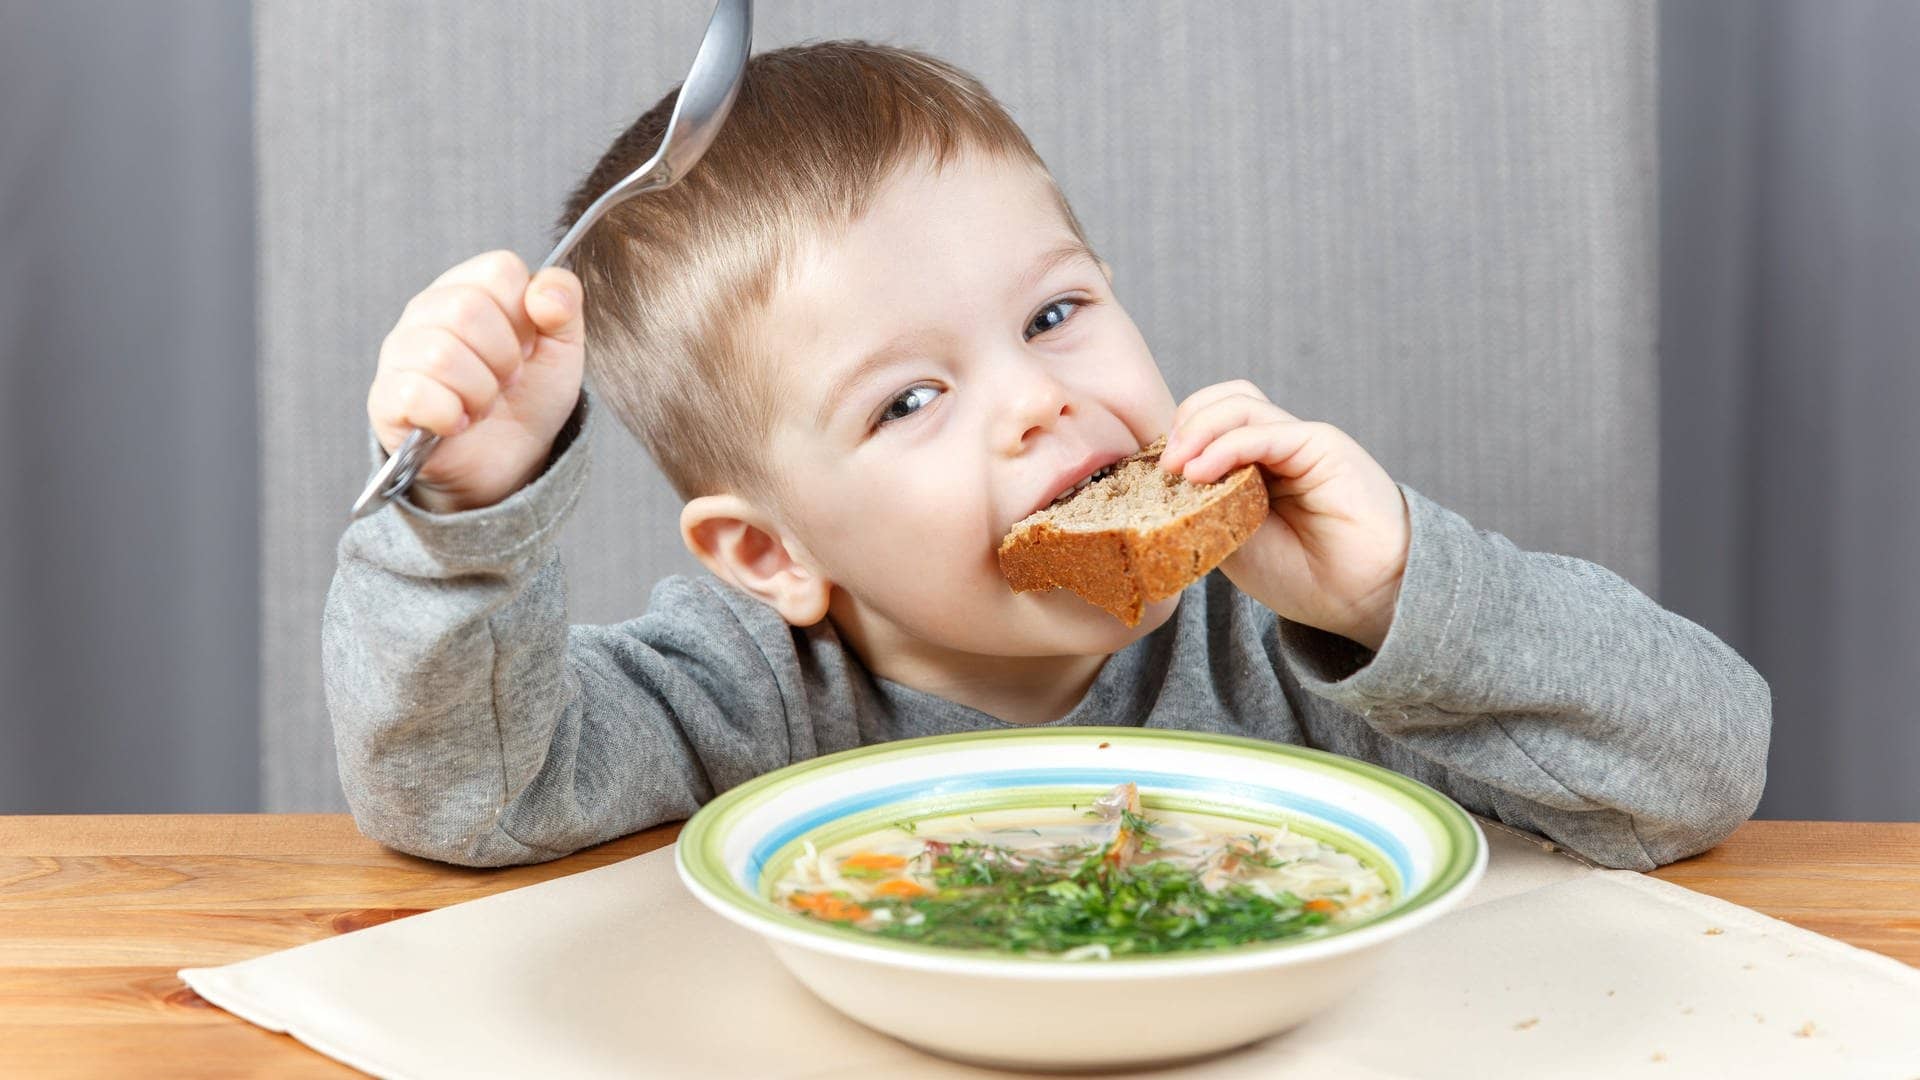 Kleiner Junge löffelt Hühnersuppe und steckt sich ein Stück Brot in den Mund. Das hilft sicher gegen Erkältung. (Foto: Adobe Stock, Vanoa2)